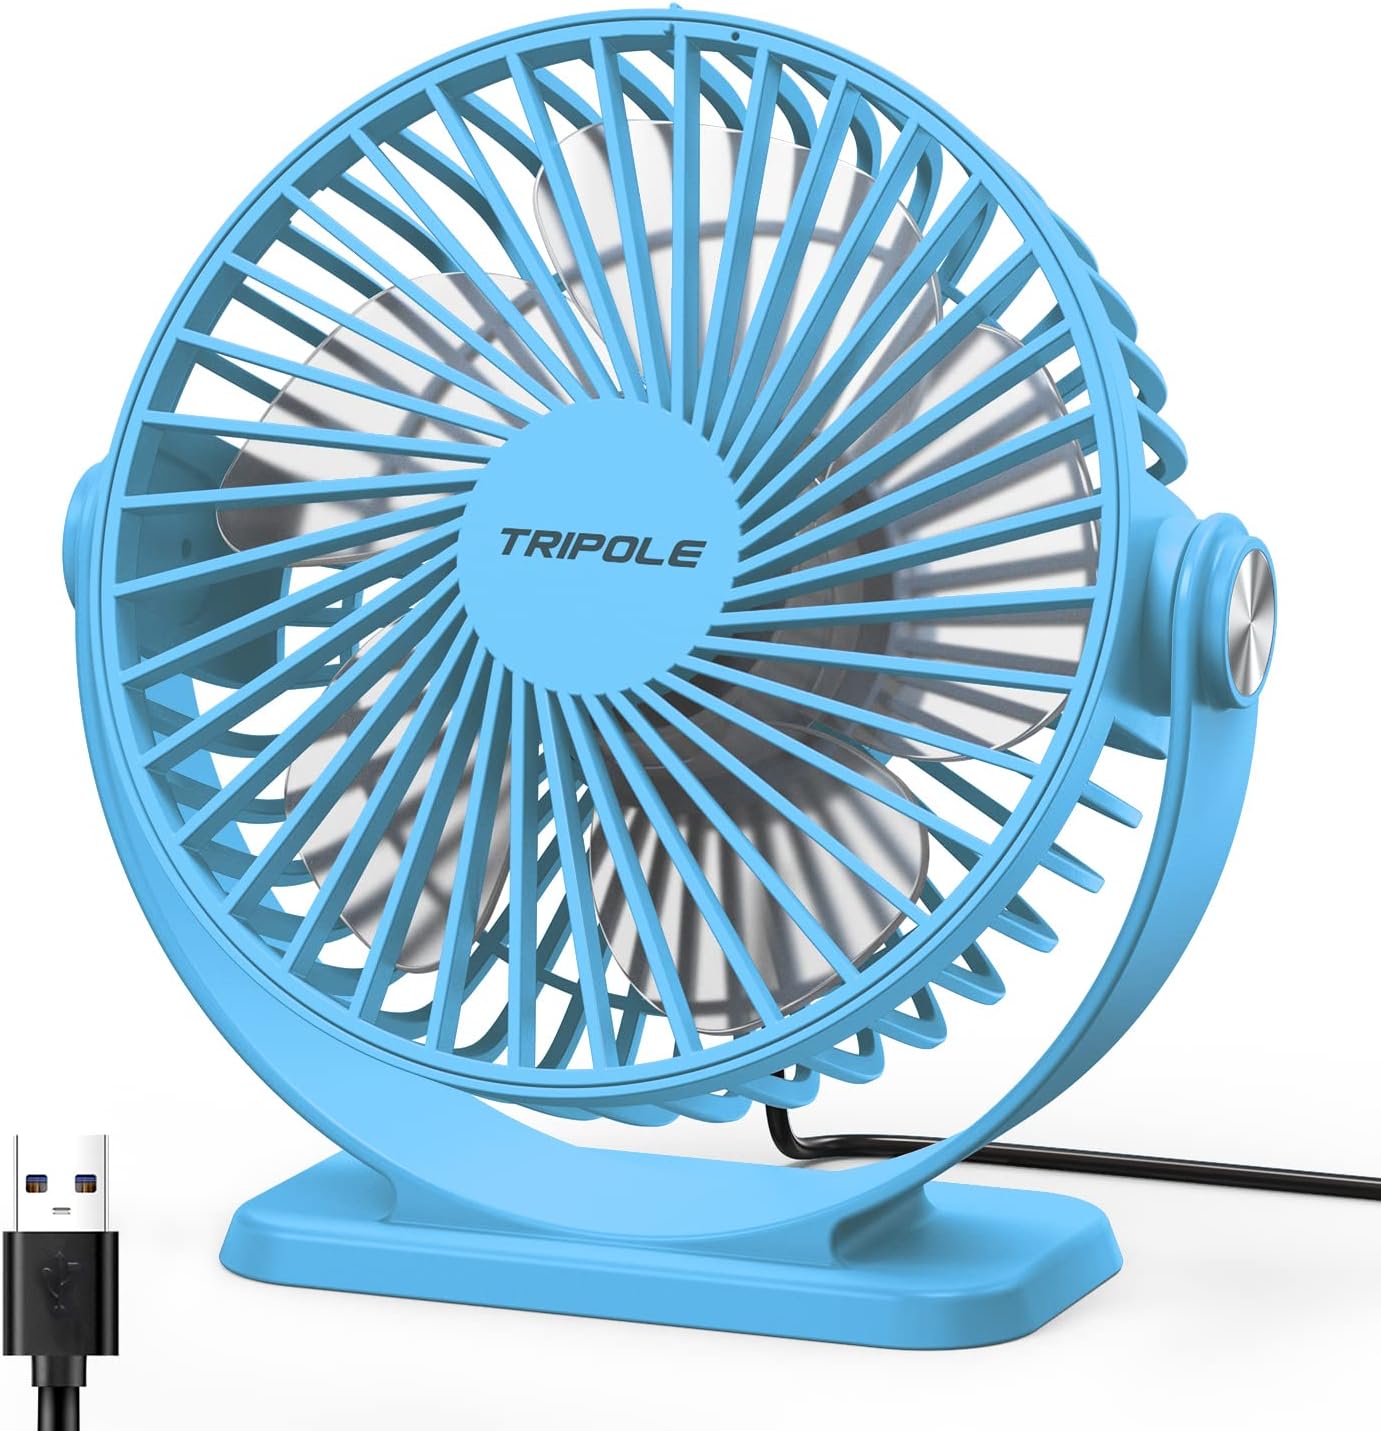 TriPole USB Powered Desk Fan Small Personal Fan 3 Speeds Strong Airflow Mini Fan 360Rotation Portable Fan 5.1 Inch Table Fan for Home Office Bedroom Desktop, Blue, 4.9ft Cable